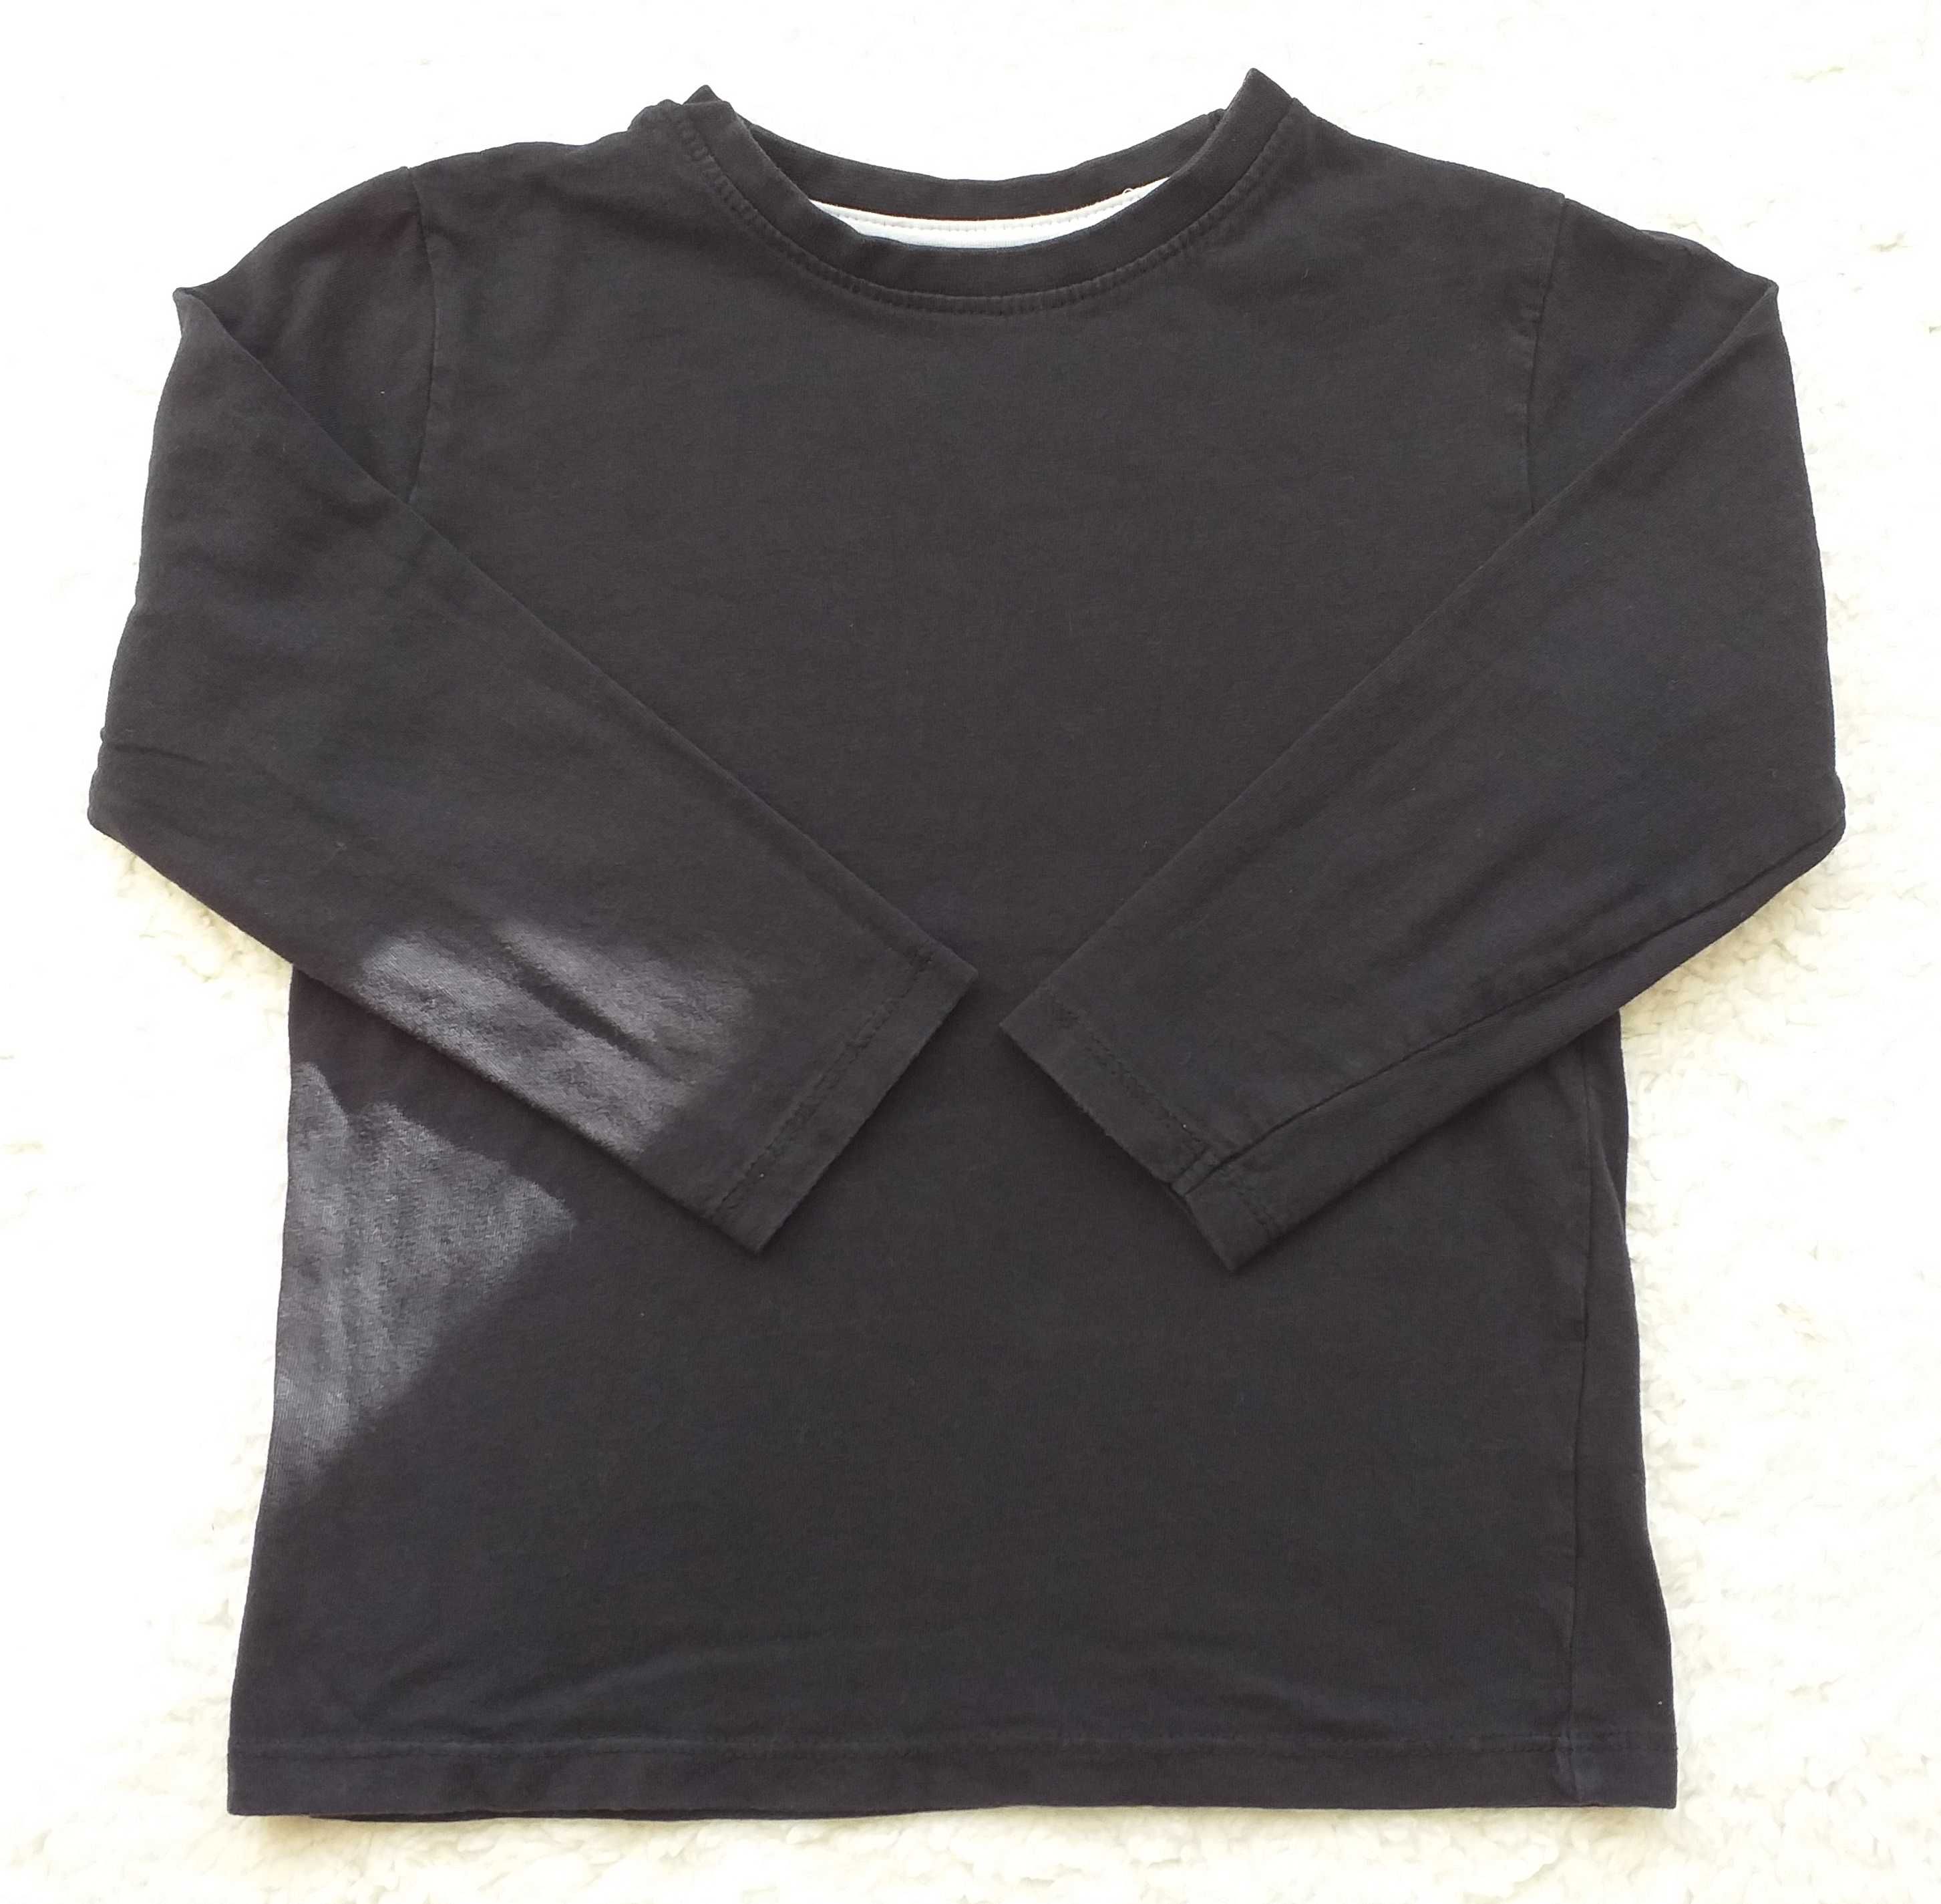 PRIMARK koszulka/bluzka chłopięca rozm. 98-104 czarna